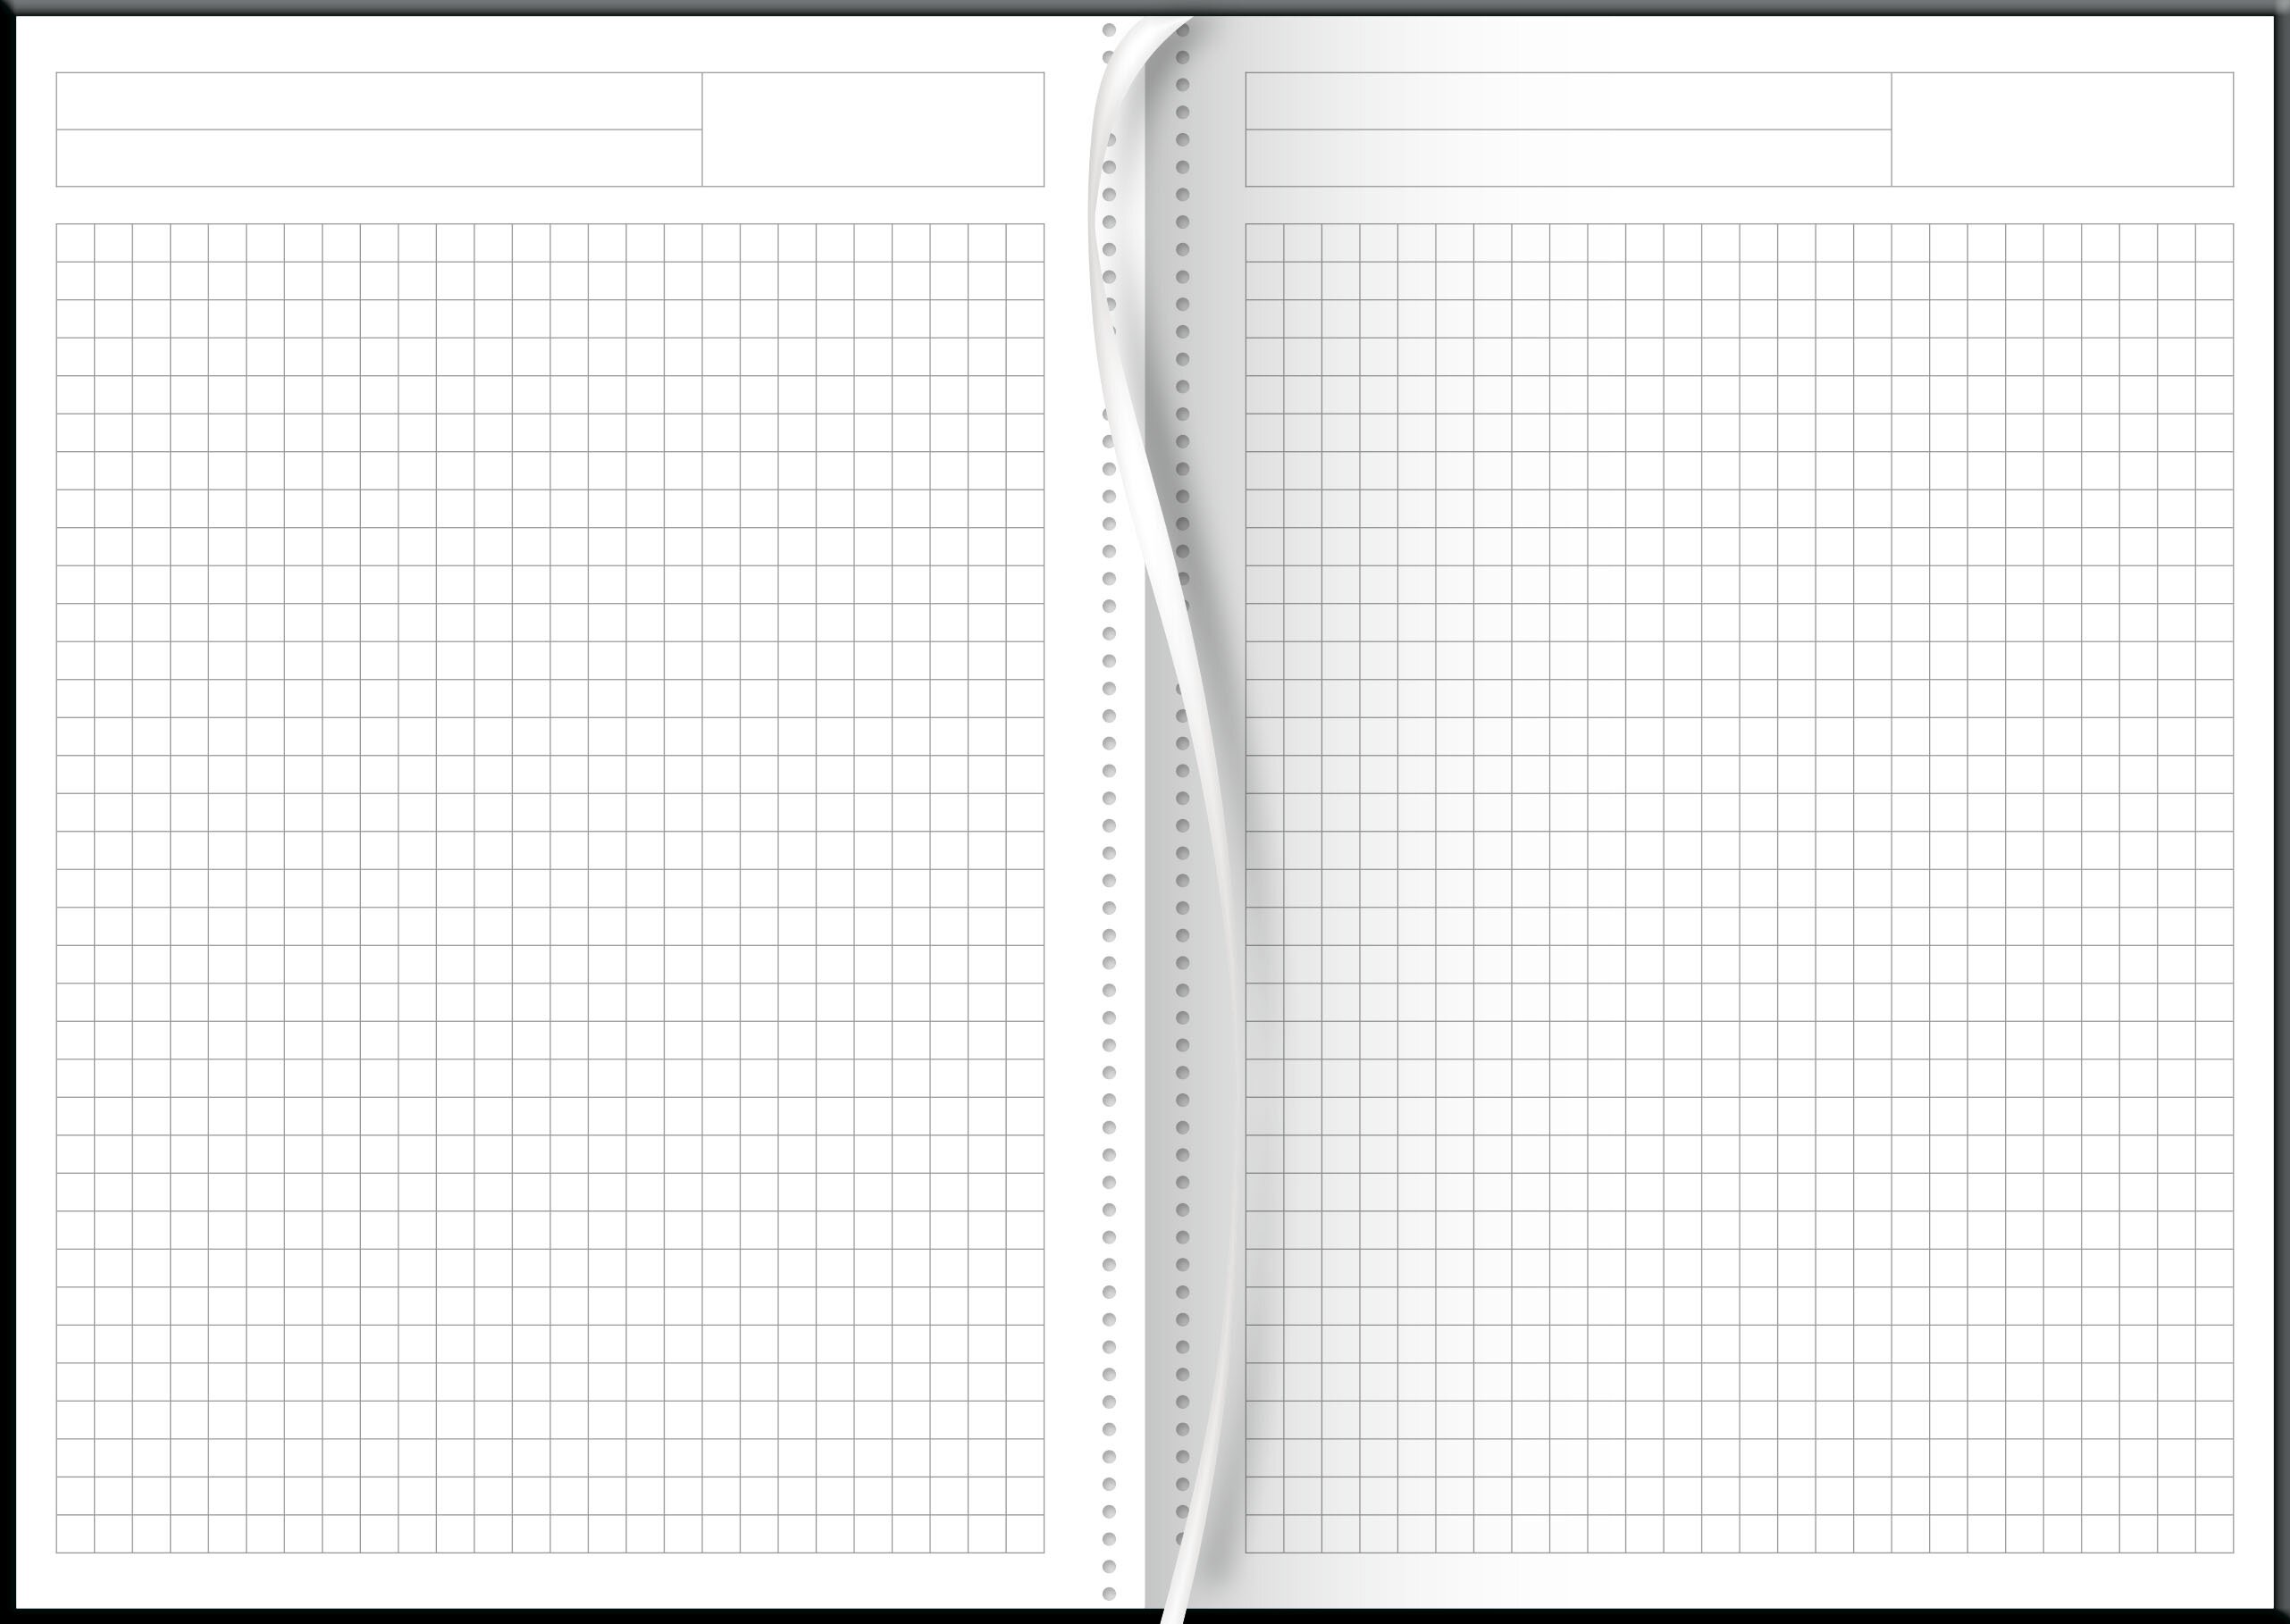 Notizbuch A5 Trend kariert
Soft-Touch Flex schwarz